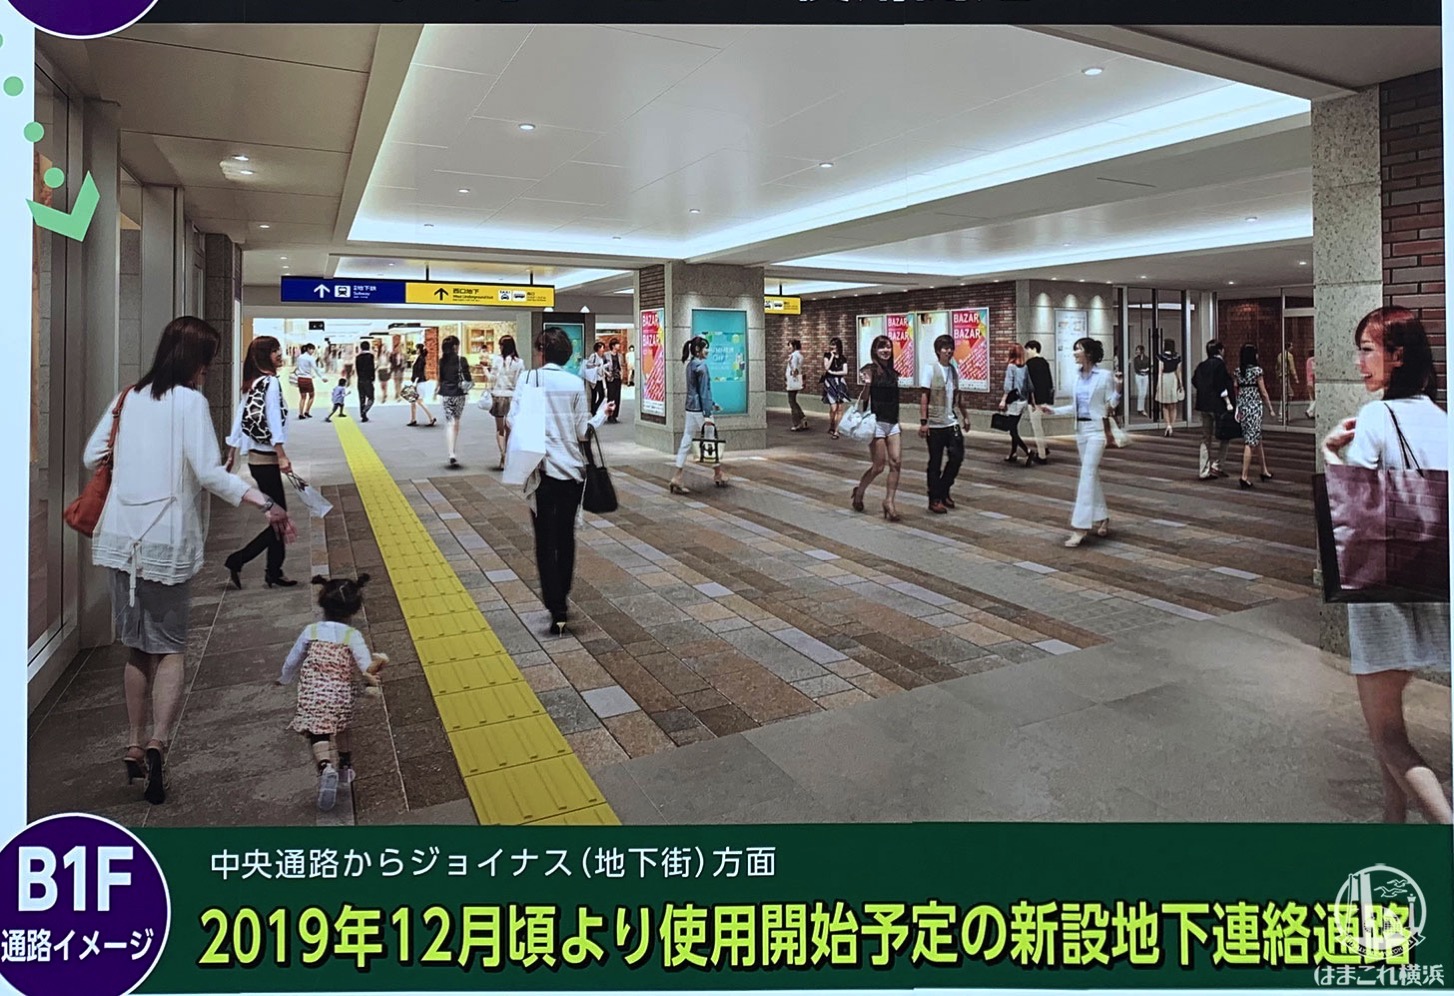 横浜駅 中央通路と西口地下街（ジョイナス）繋ぐ新設地下連絡通路が12月7日、ついに開通！